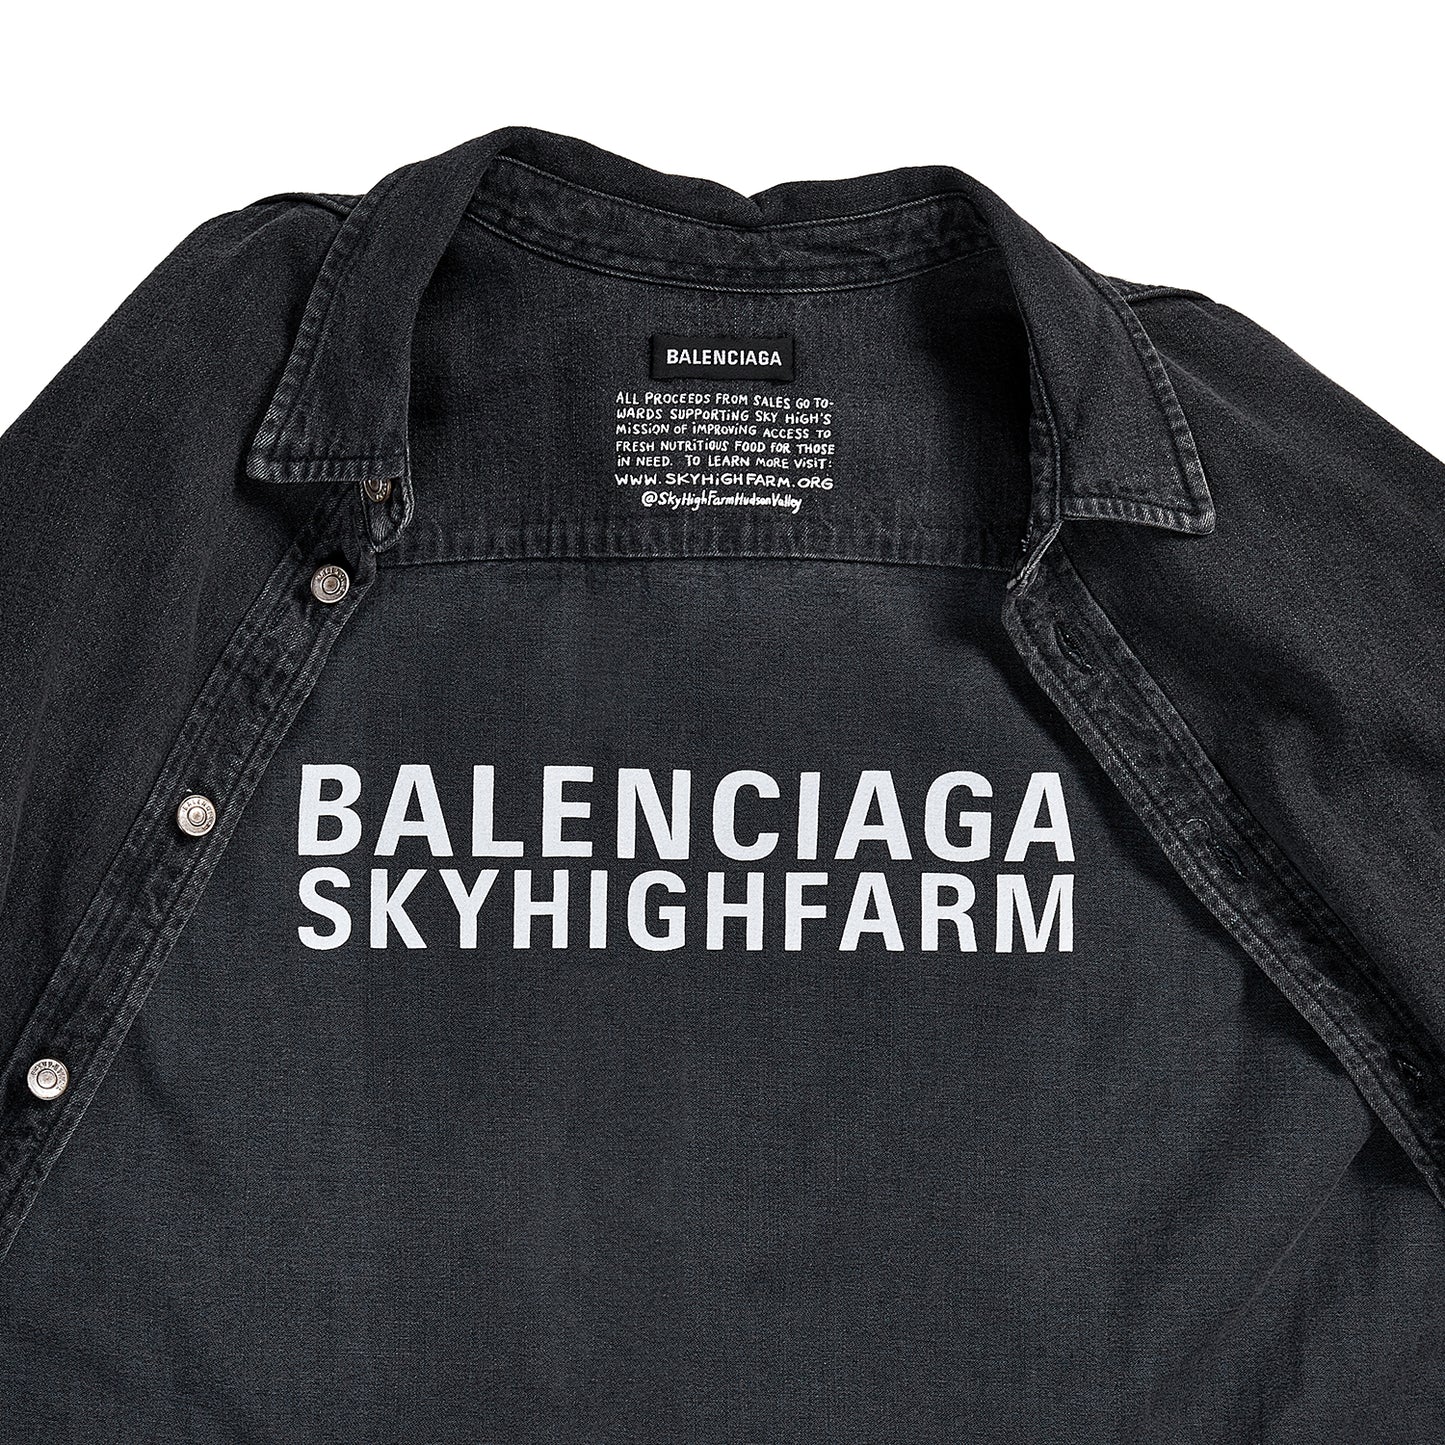 BALENCIAGA X SKY HIGH FARM DENIM SHIRT - ROOSTER